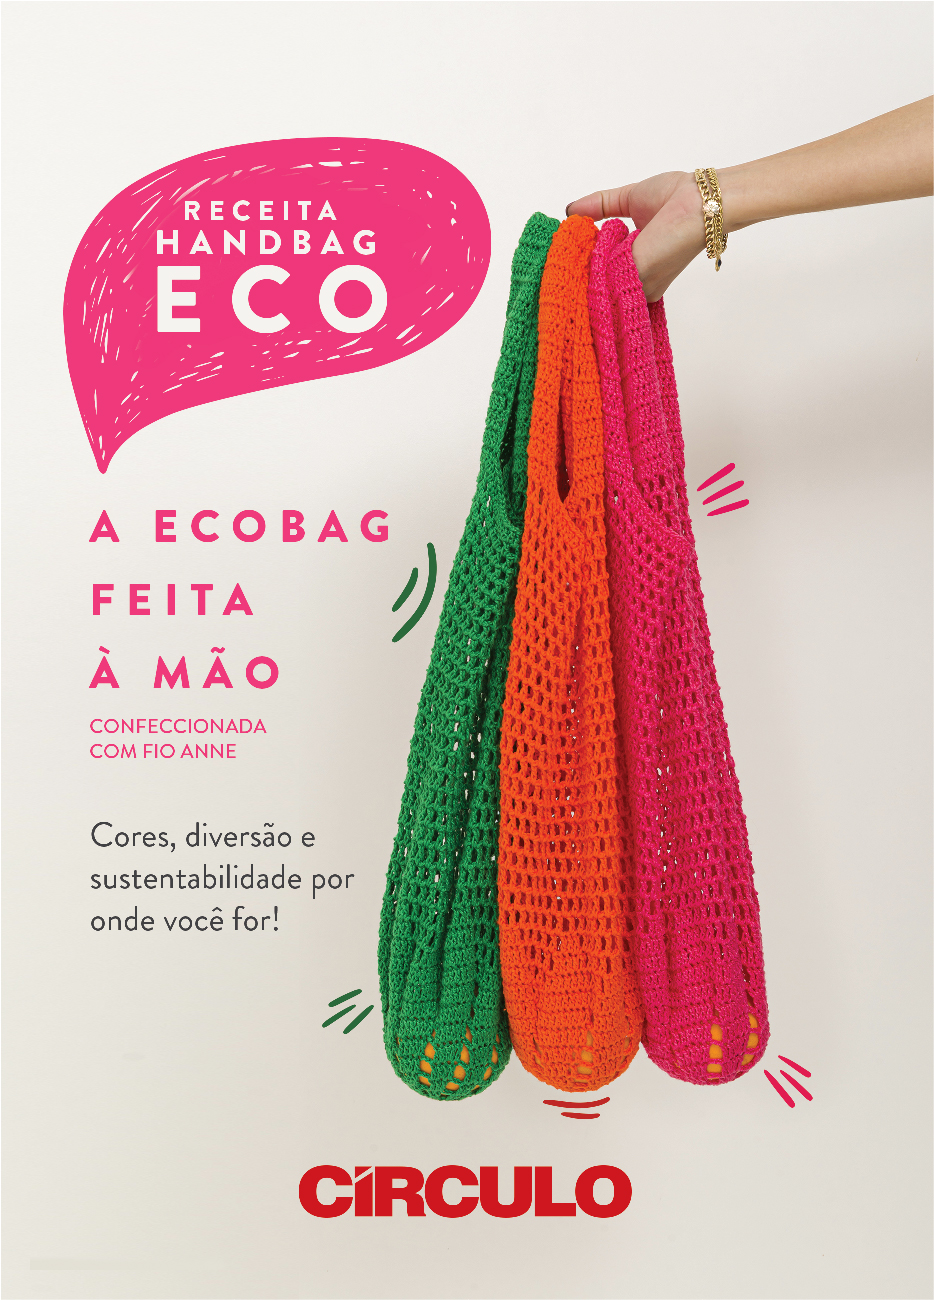 Handbag Eco